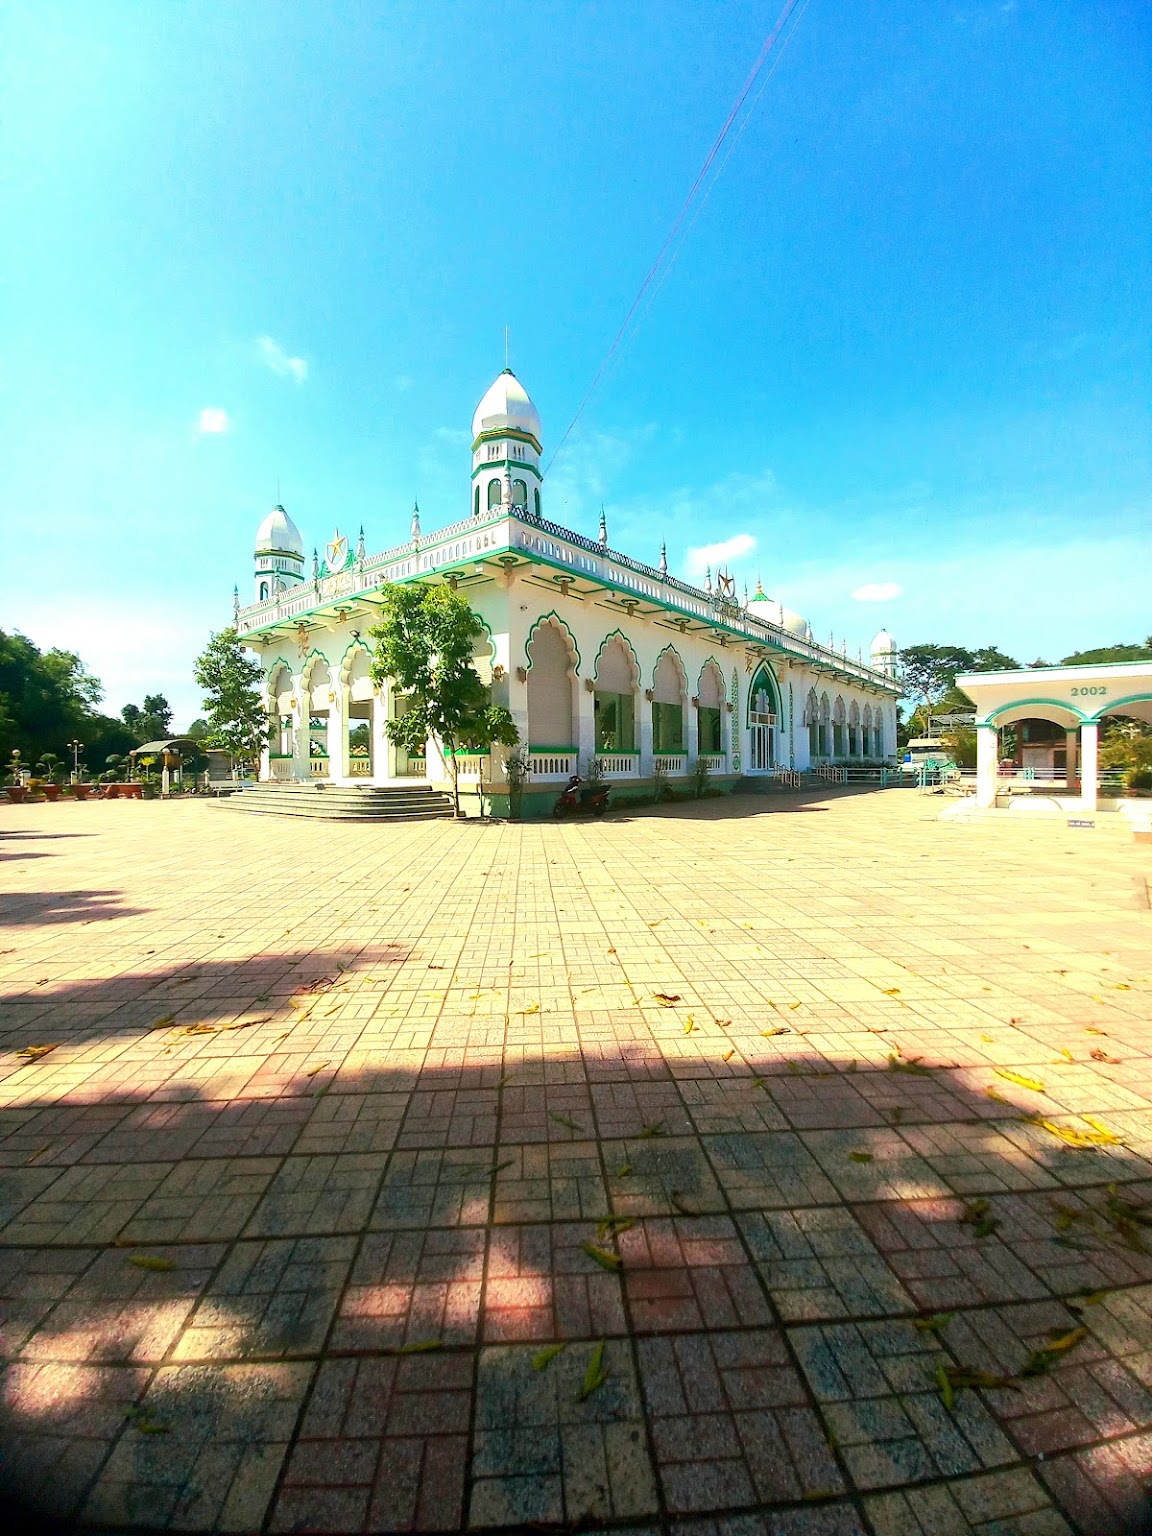 Masjid Jamiul Azhar Mosque in An Giang